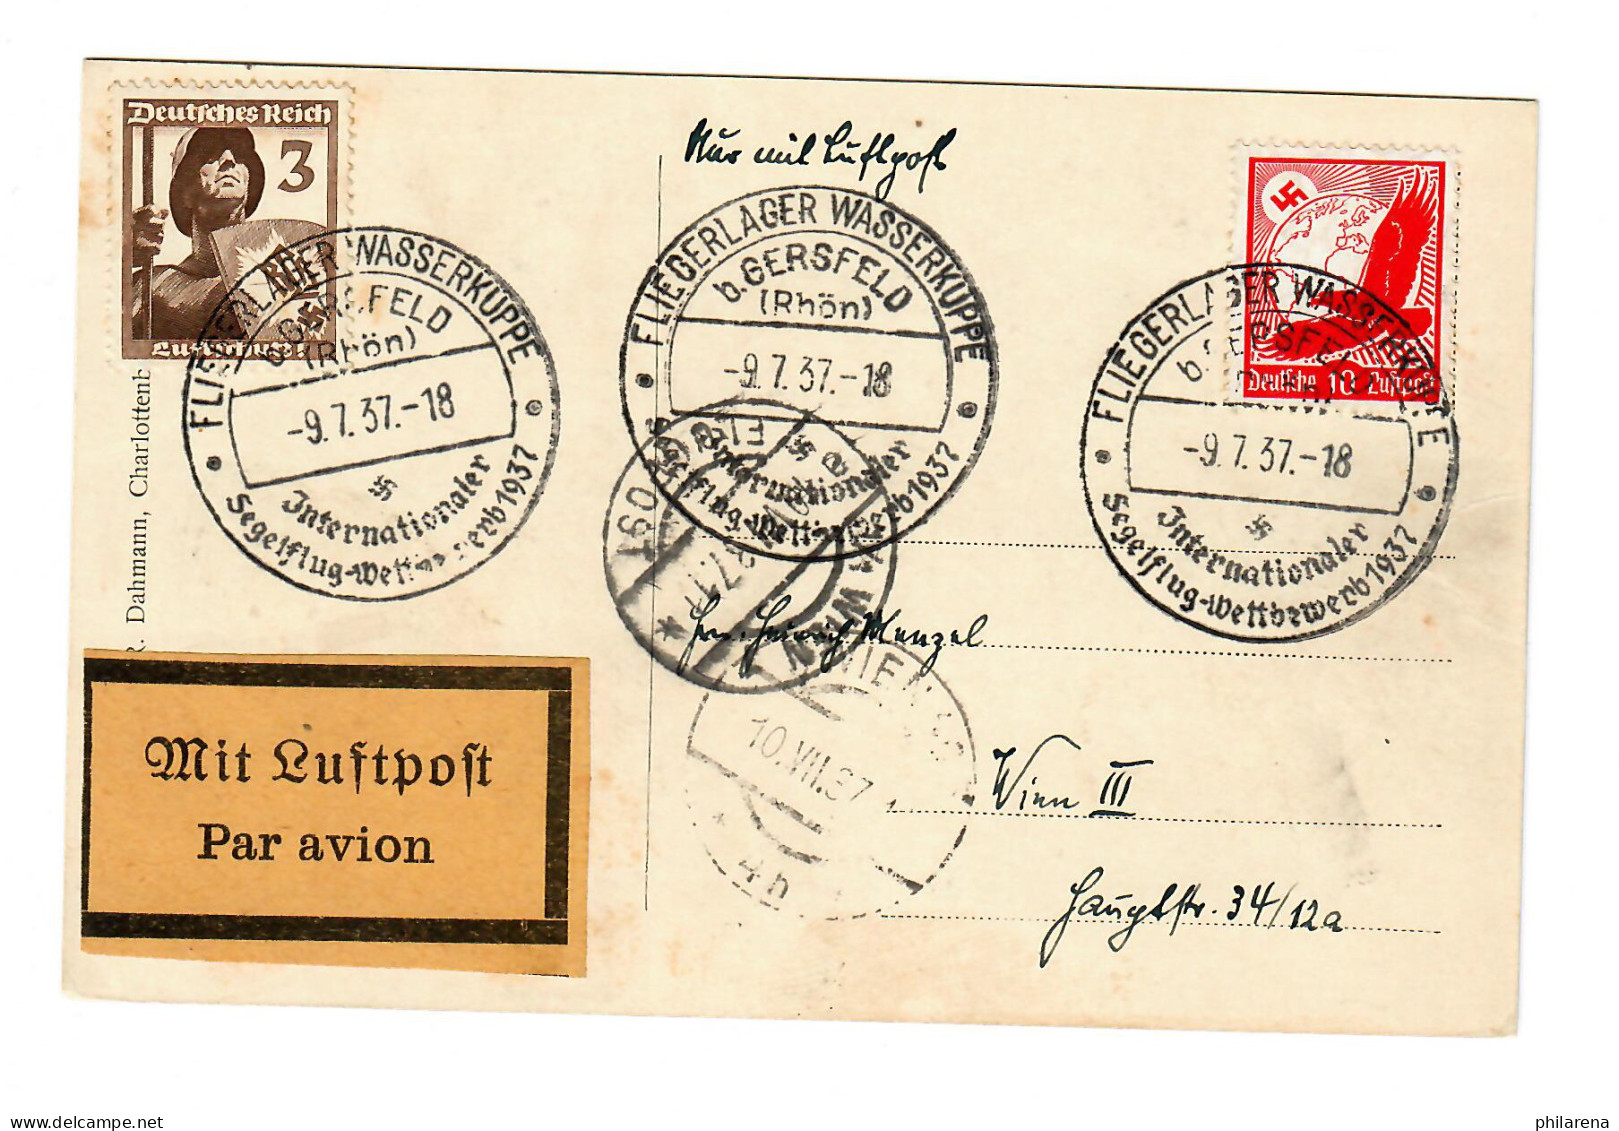 Fliegerlager Wasserkupppe B. Gersfeld/Rhön, Segelflug Wettbewerb 1937, Luftpost - Briefe U. Dokumente